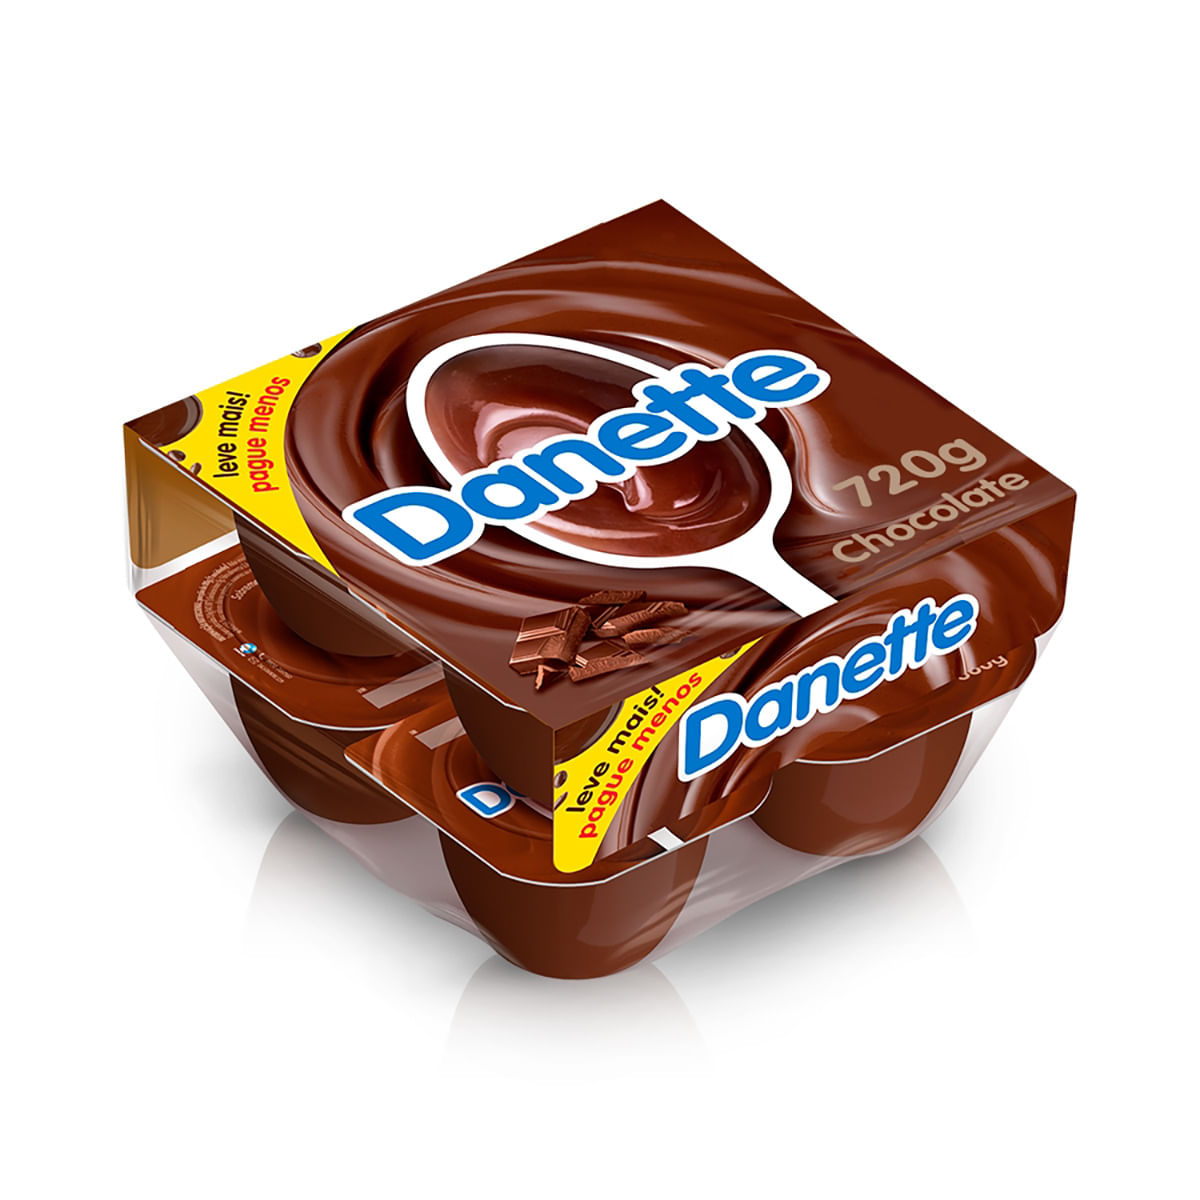 danette-de-chocolate-720-ml-com-8-unidades-1.jpg